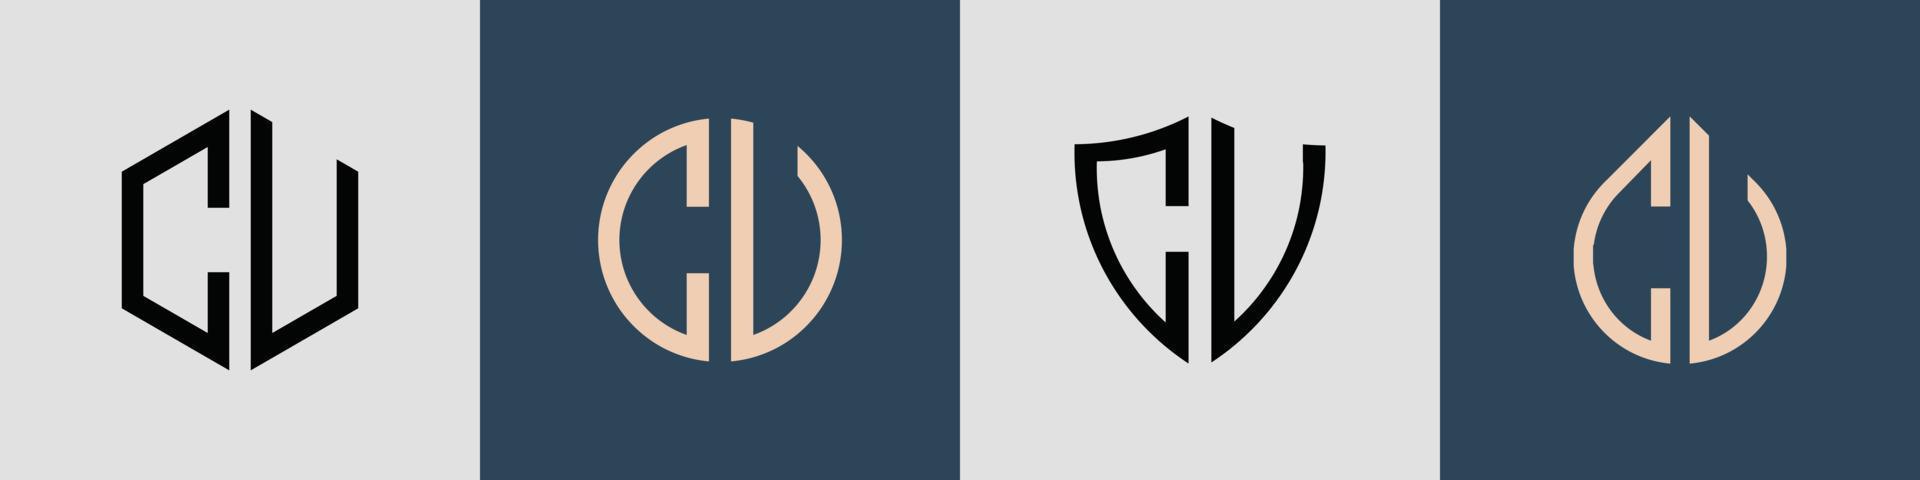 kreativa enkla initiala bokstäver cu logo design bunt. vektor